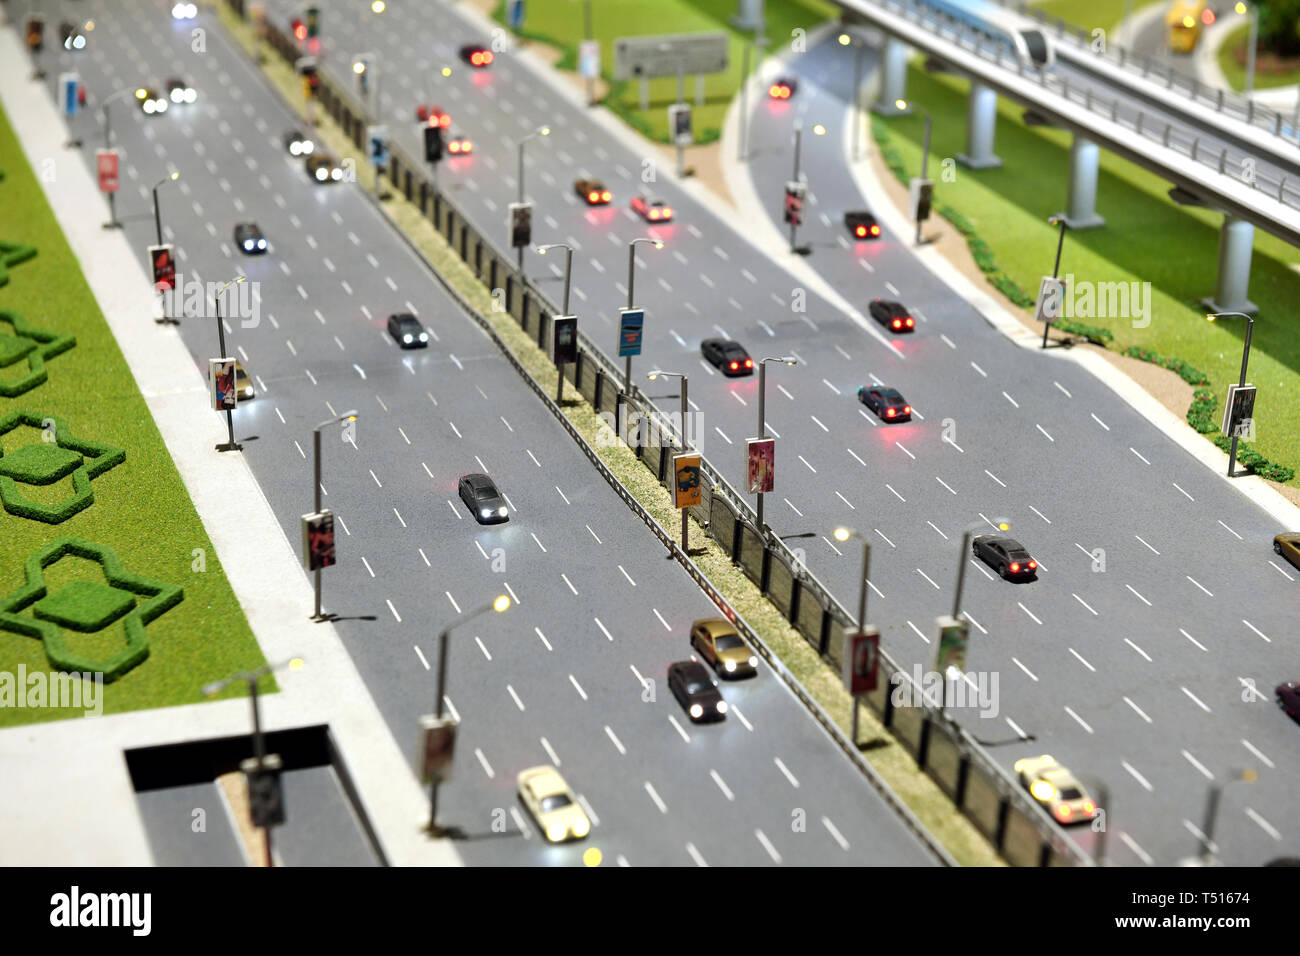 Modell der Stadt Straße mit Multi Lane Autobahn mit Datenverkehr in beide Richtungen und der Überführung auf der rechten Seite Stockfoto